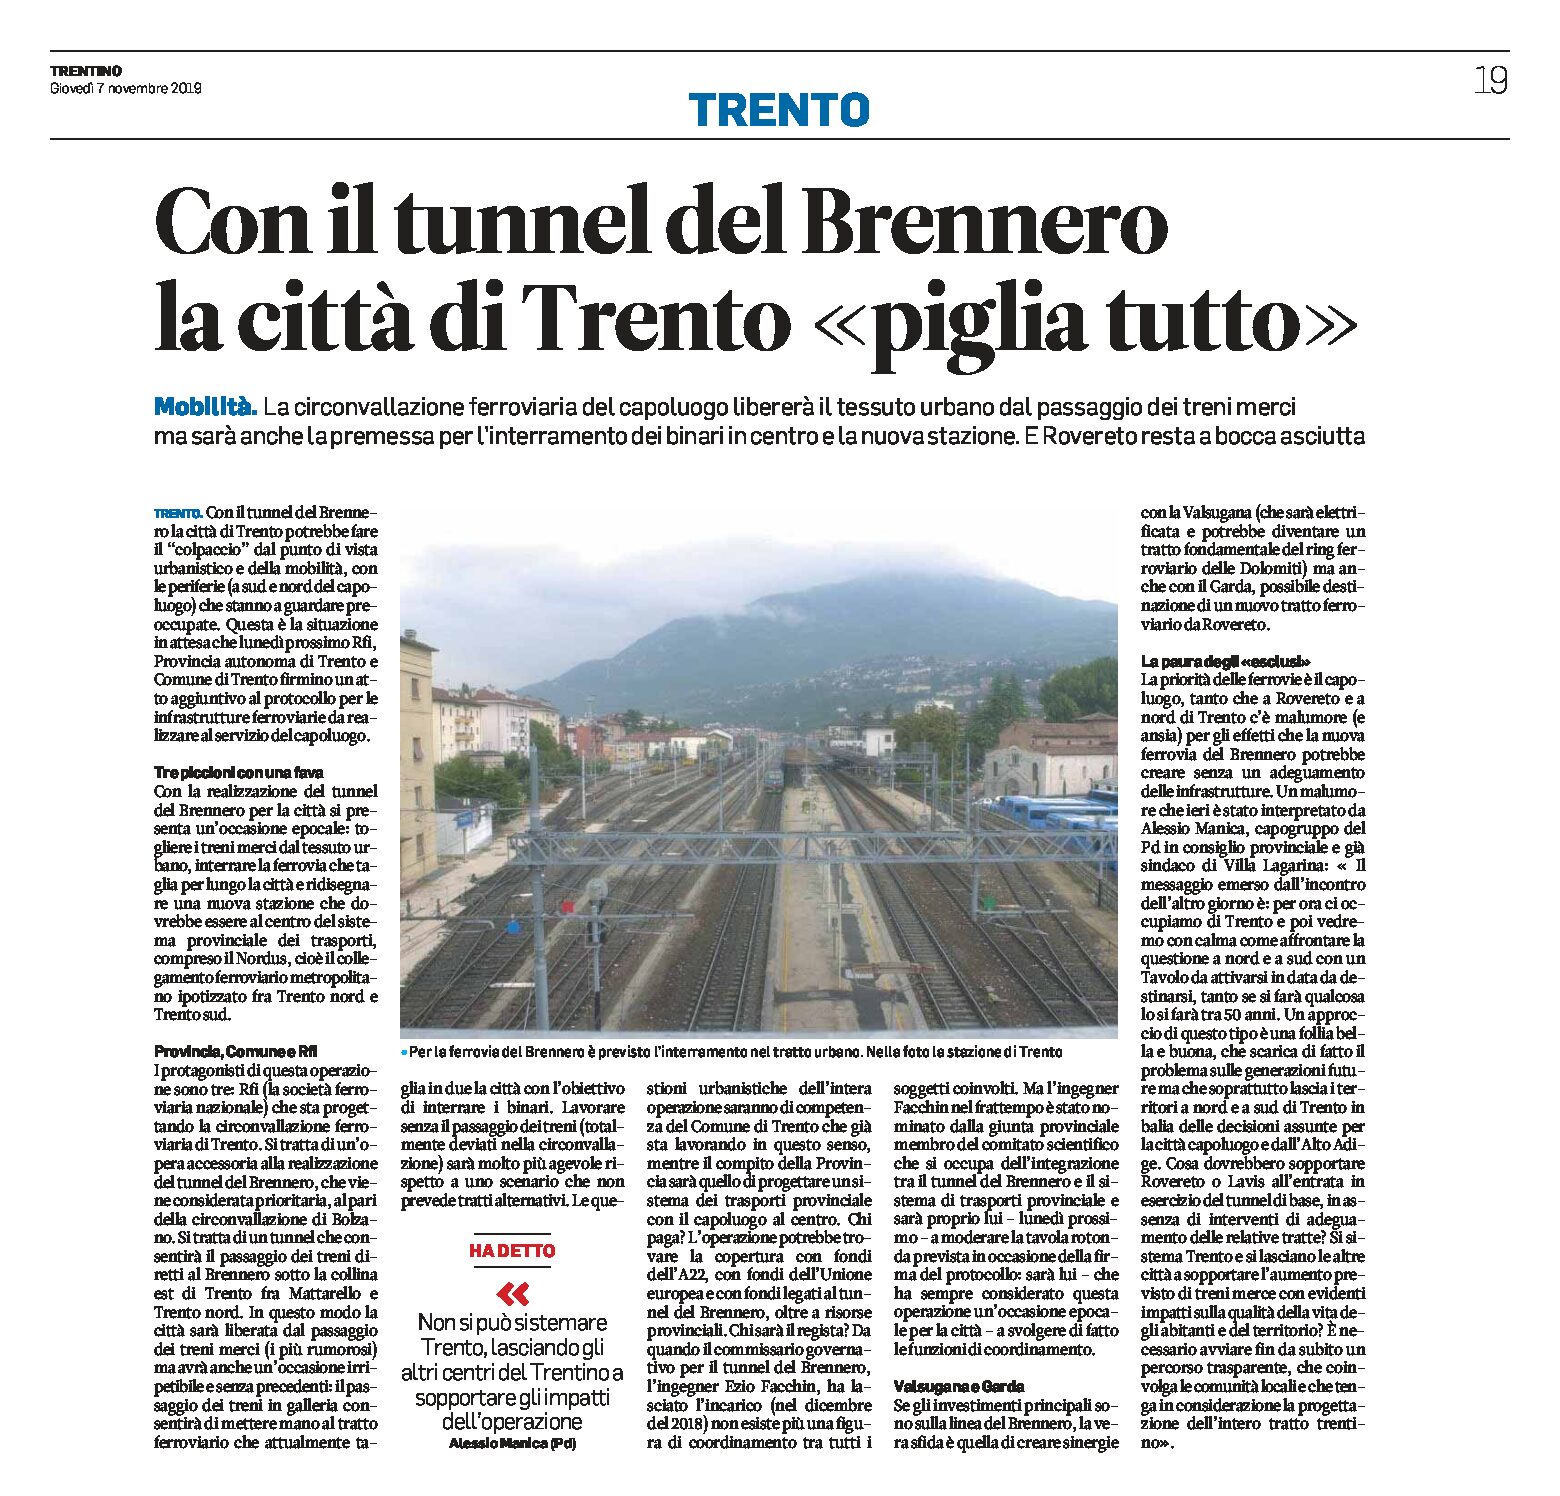 Tunnel del Brennero: la città di Trento “piglia tutto”